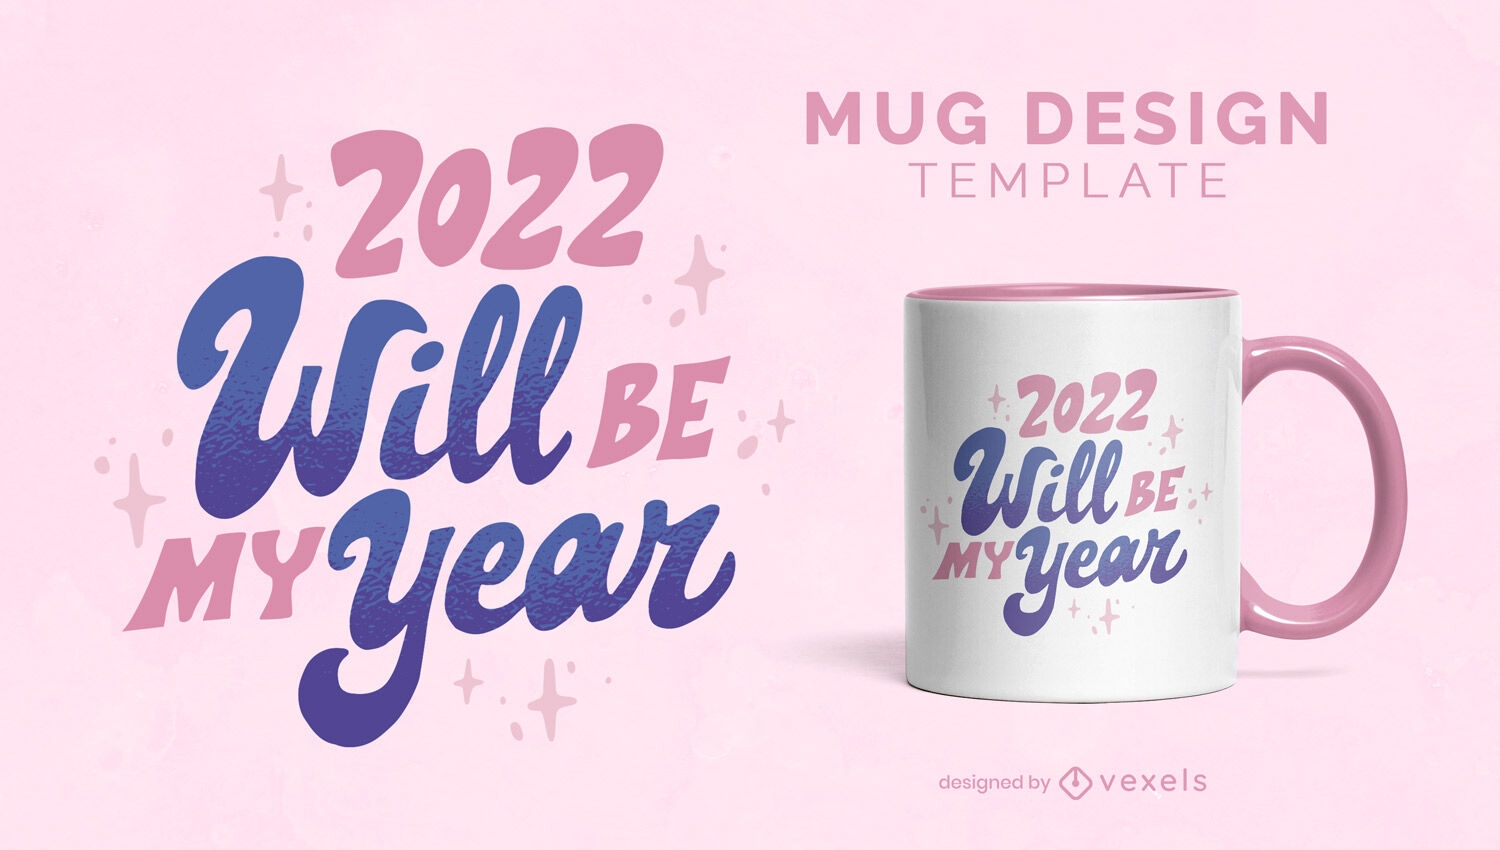 2022 will be my year quote mug design